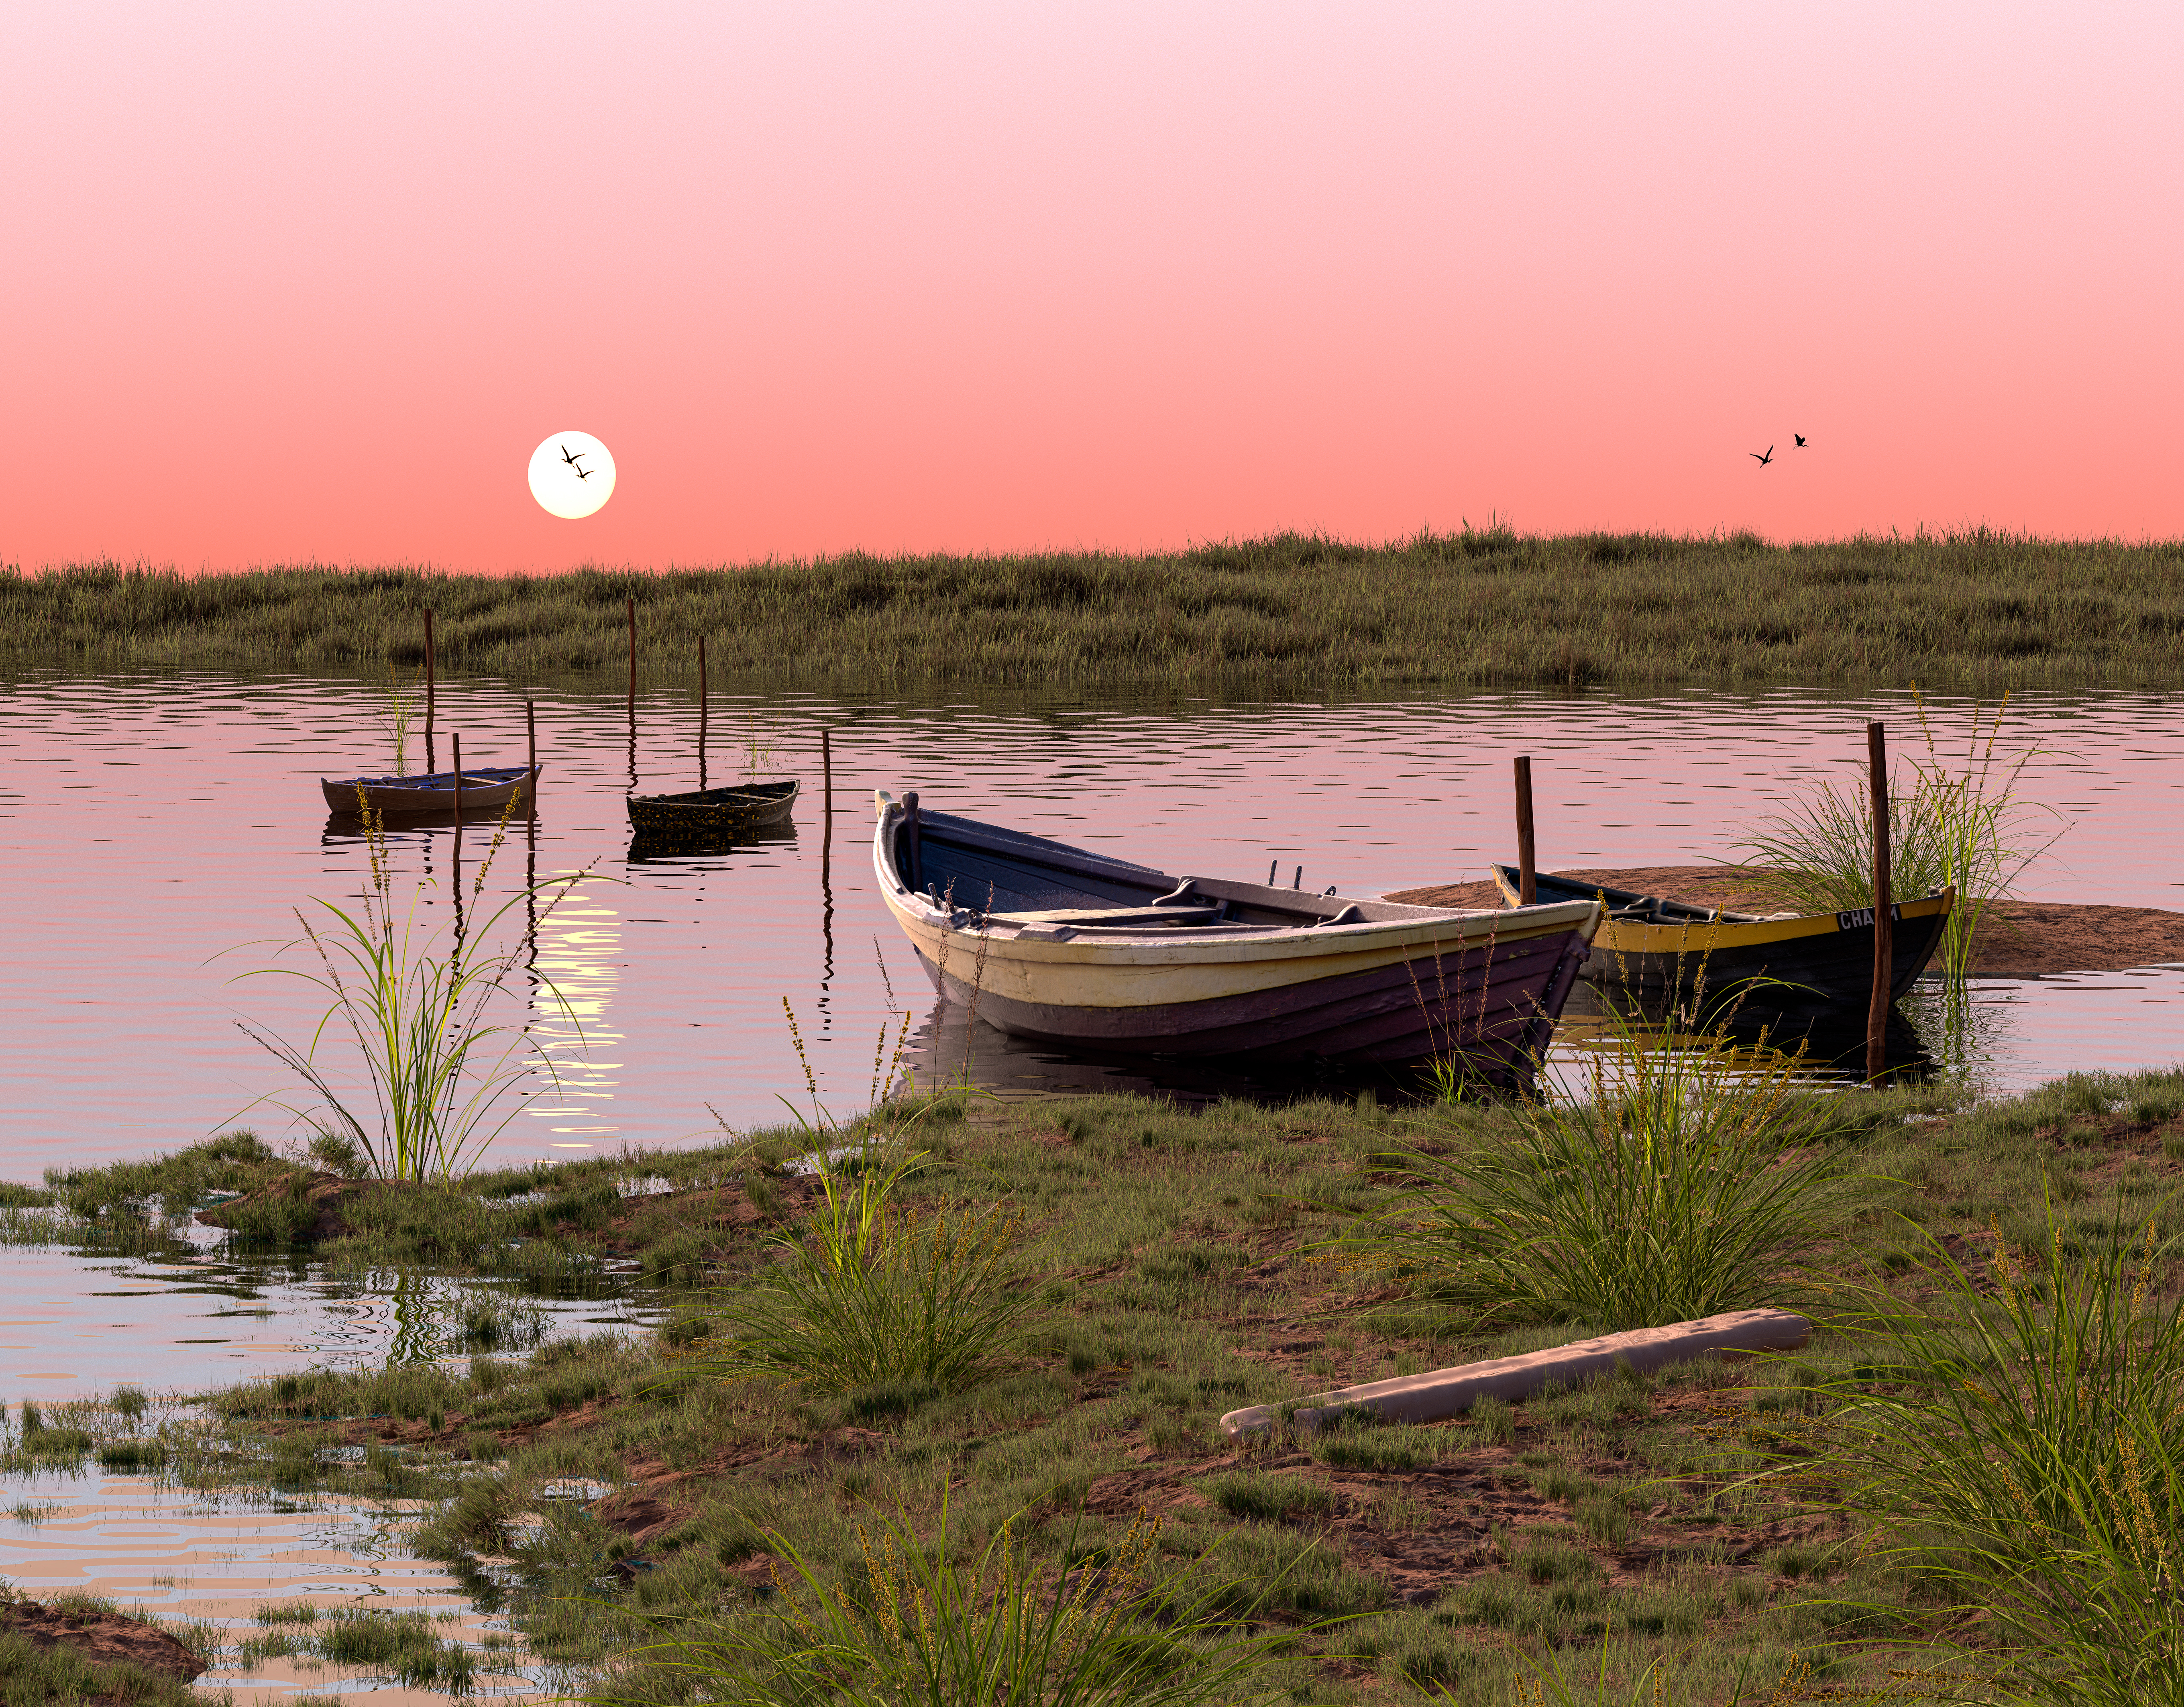 Digital Digital Art Artwork Illustration Calm Nature Sunset Landscape River Render Sky Summer Boat 5440x4251